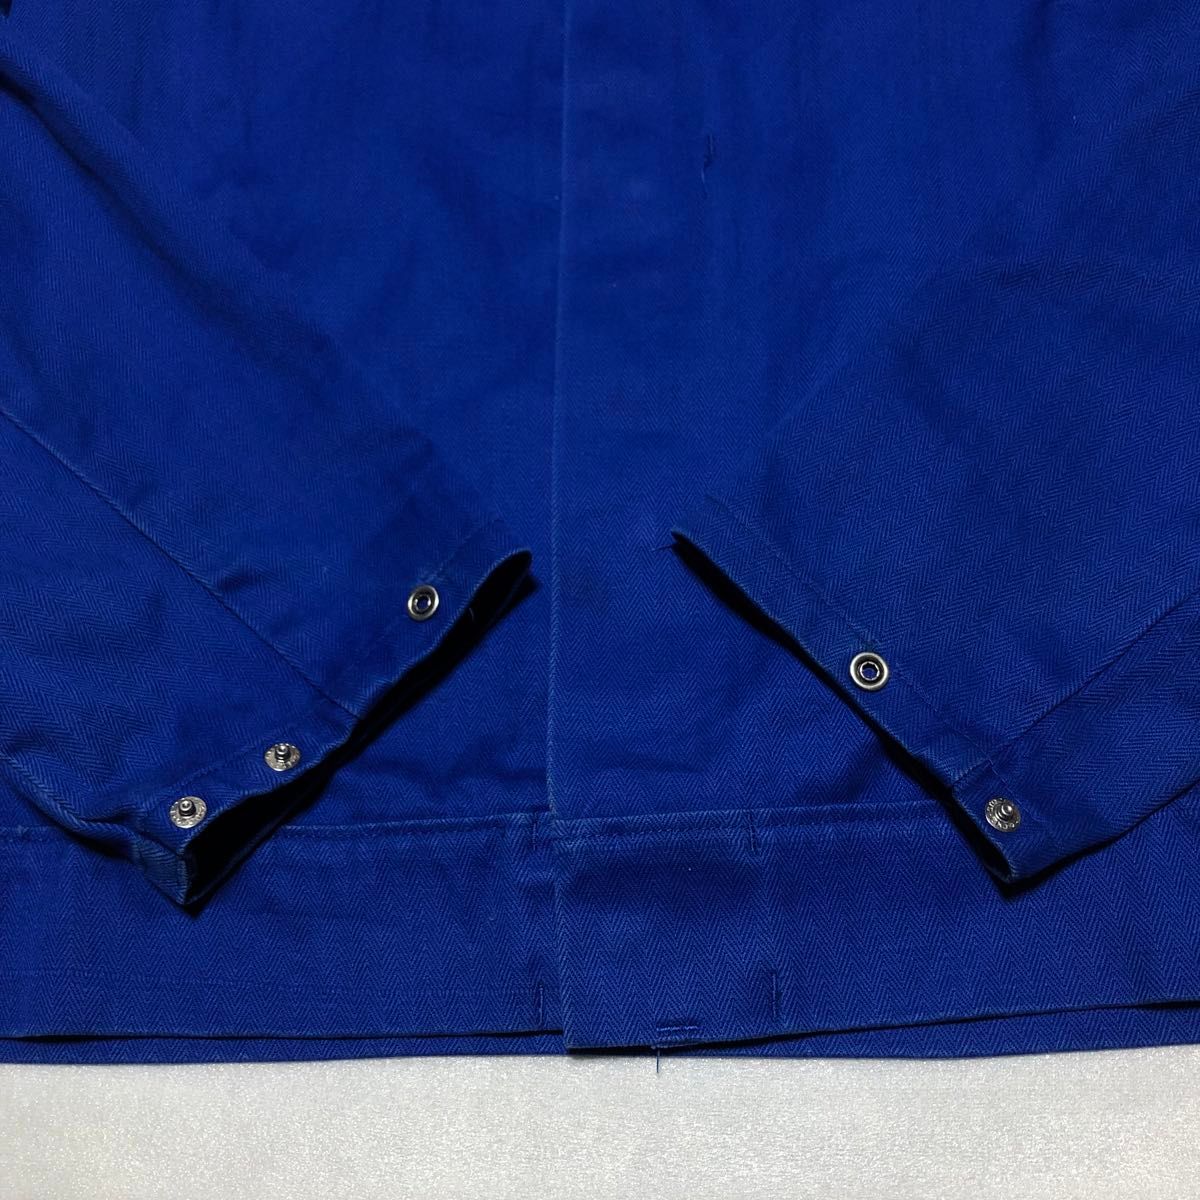 【超希少】MARQUARDT+SCHULZ ユーロワークジャケット ナス紺 青系 M 94 刺繍 フレンチヴィンテージ ブルゾン